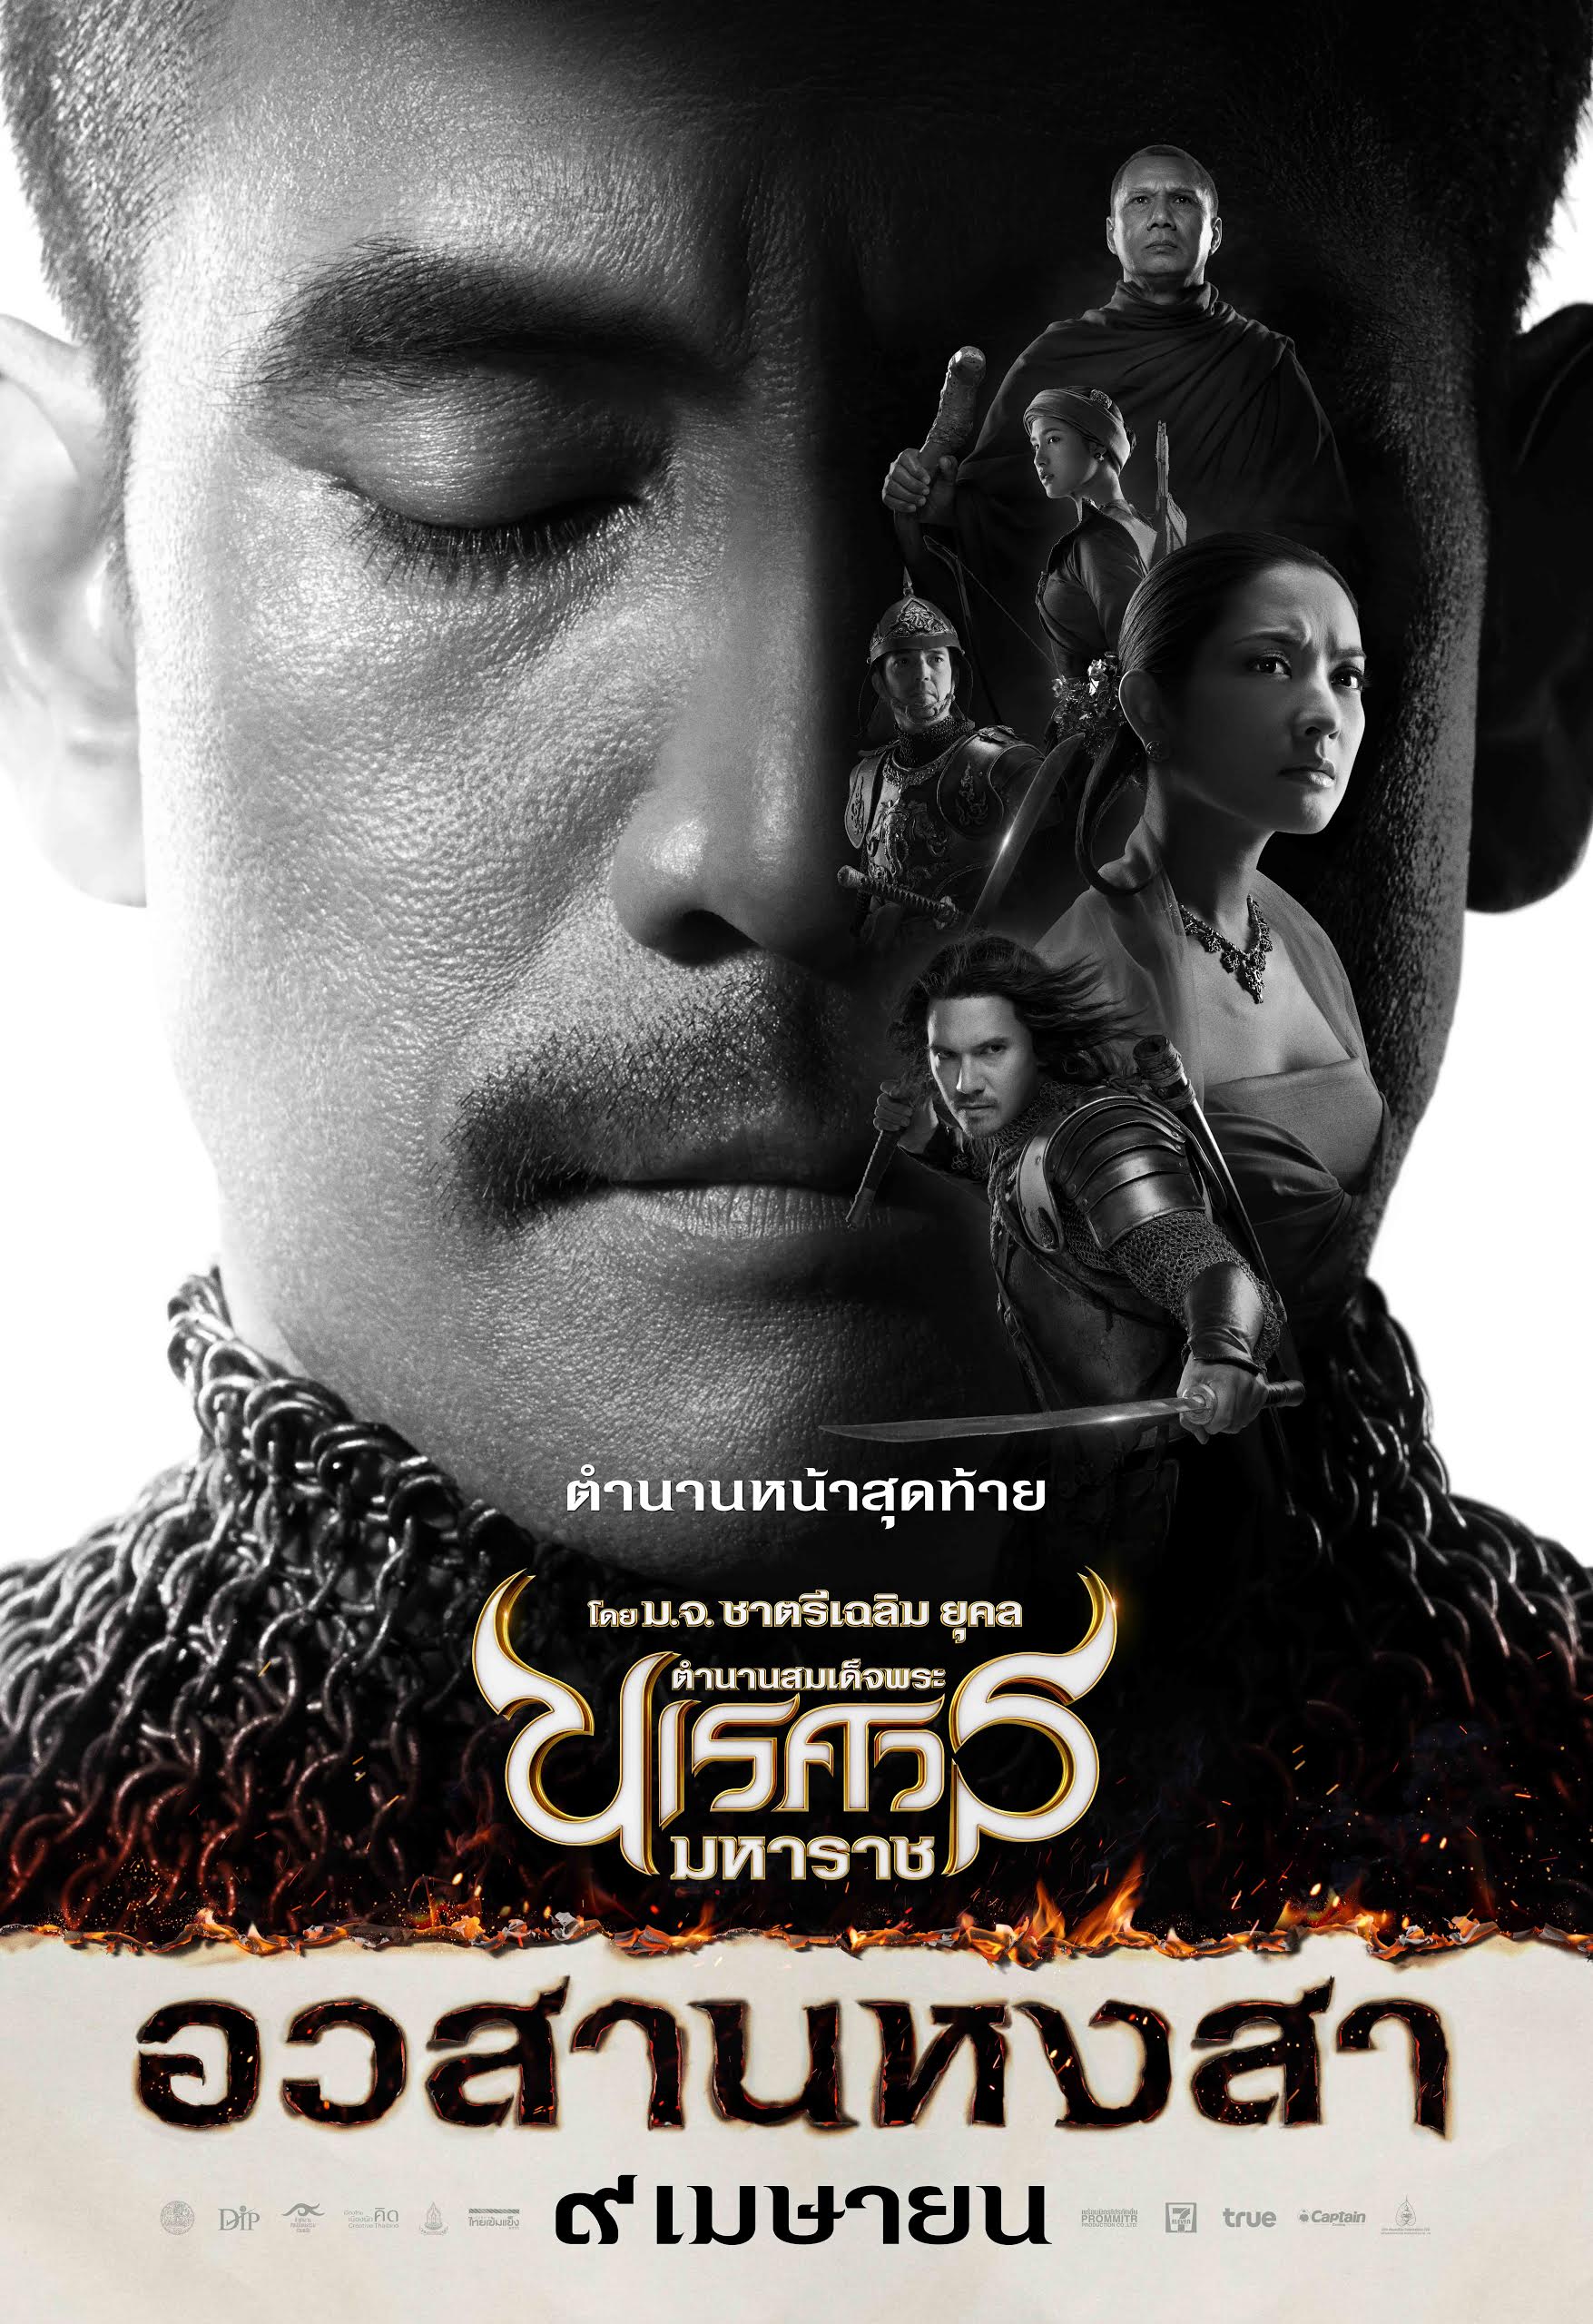 ดูหนังออนไลน์ฟรี King Naresuan 6 (2015) ตำนานสมเด็จพระนเรศวรมหาราช ภาค 6 อวสานหงสา